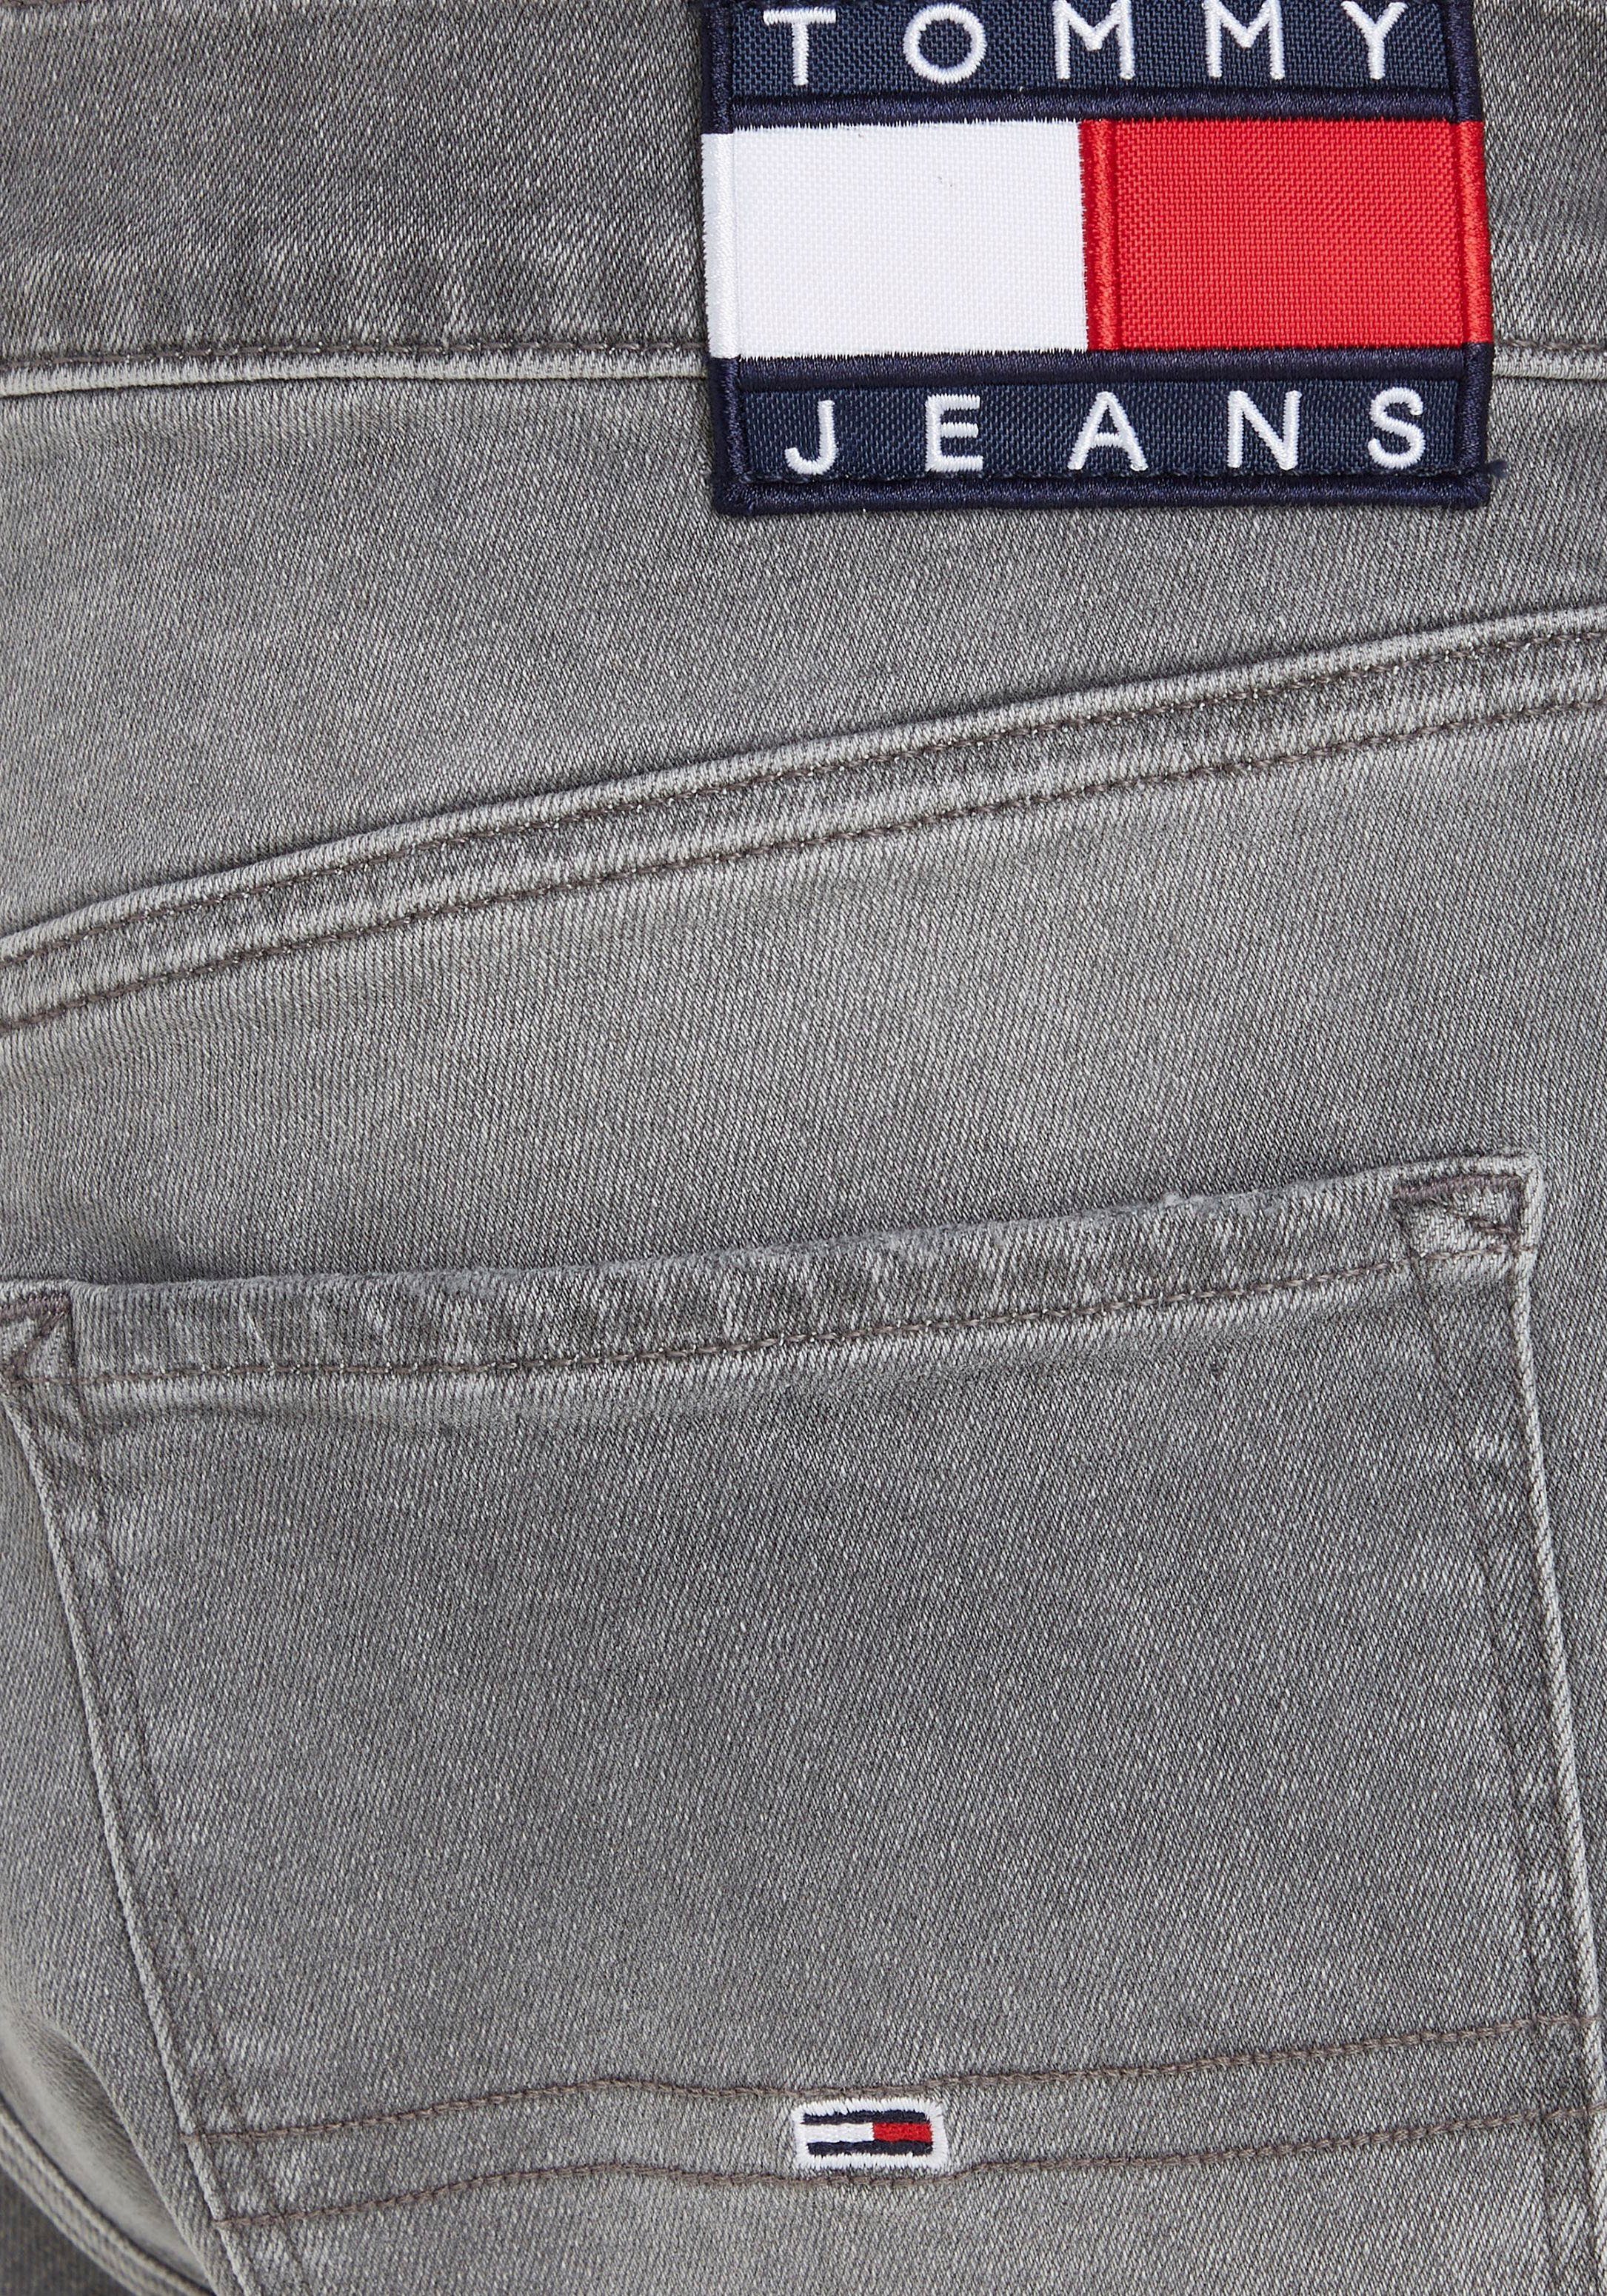 Tommy 5-Pocket-Jeans Y SLIM Denim Black Jeans SCANTON